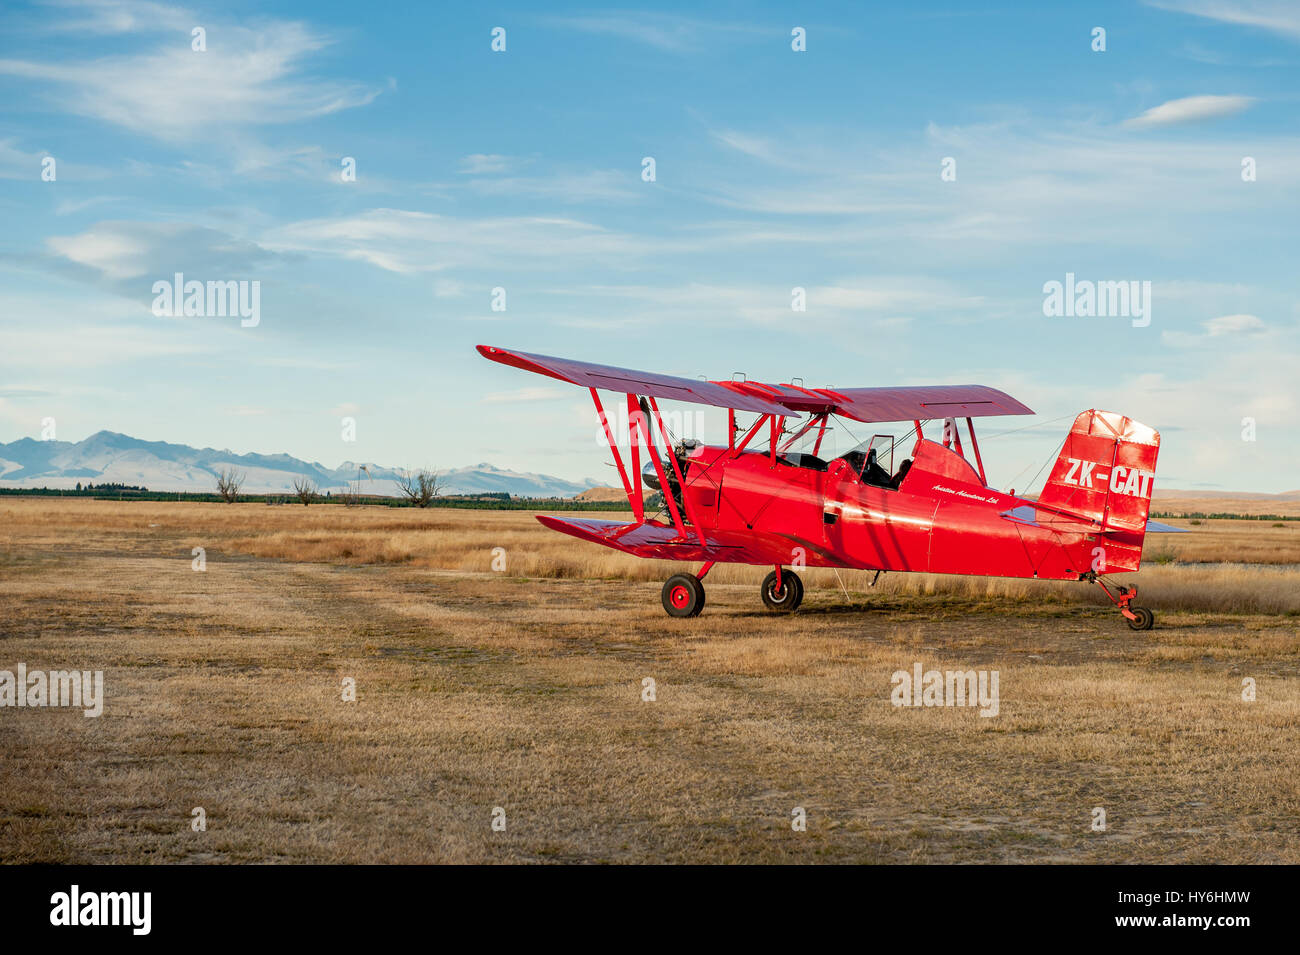 Un Ag-Cat Grumman G-164avion biplan à Pukaki Airport de Twizel. L'Ag Cat a été le premier avion spécialement conçu pour l'aviation agricole. Banque D'Images